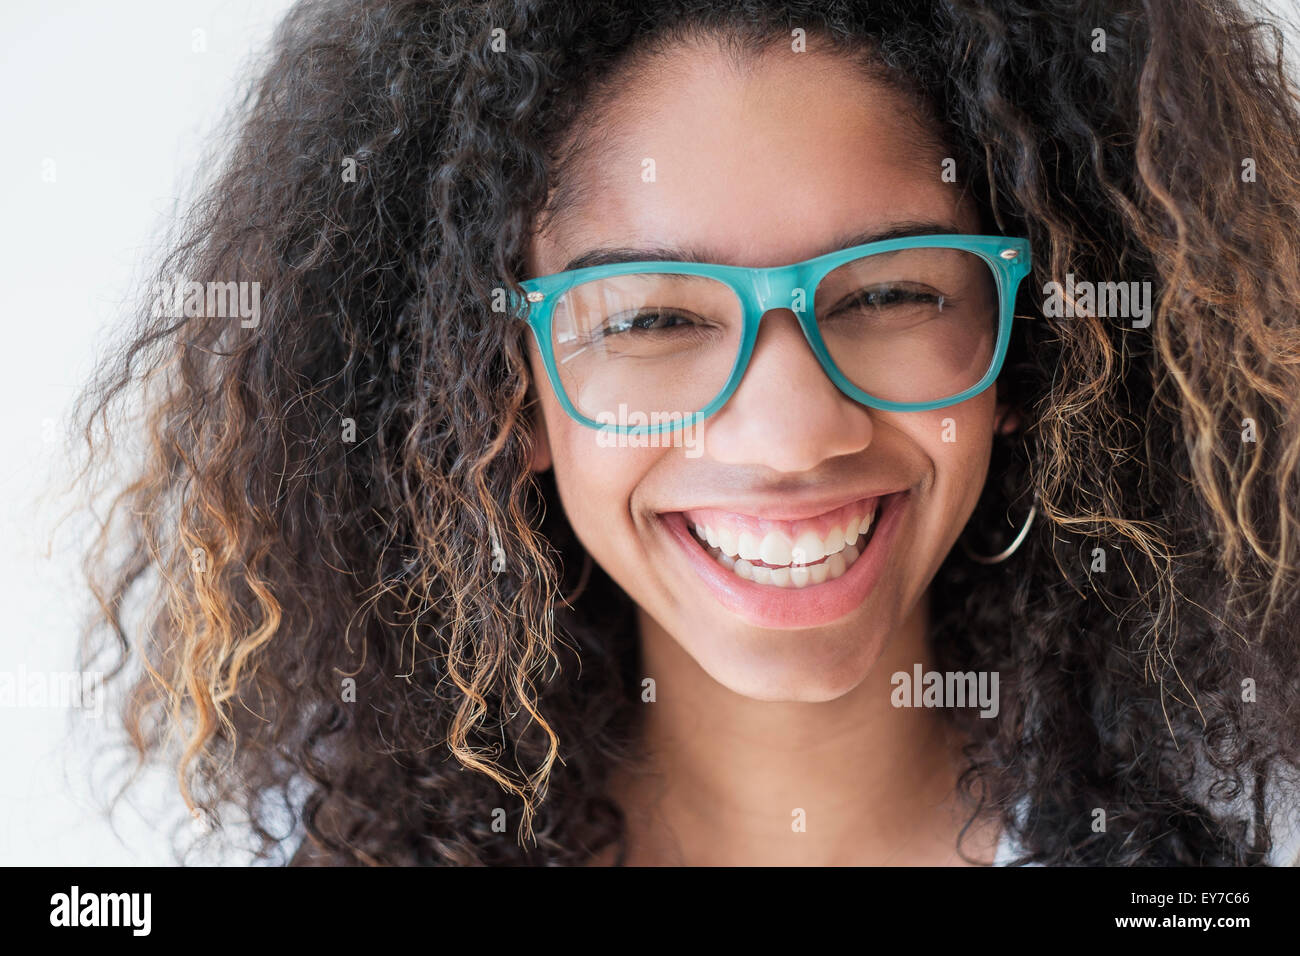 Retrato de una adolescente (16-17) llevar gafas. Foto de stock